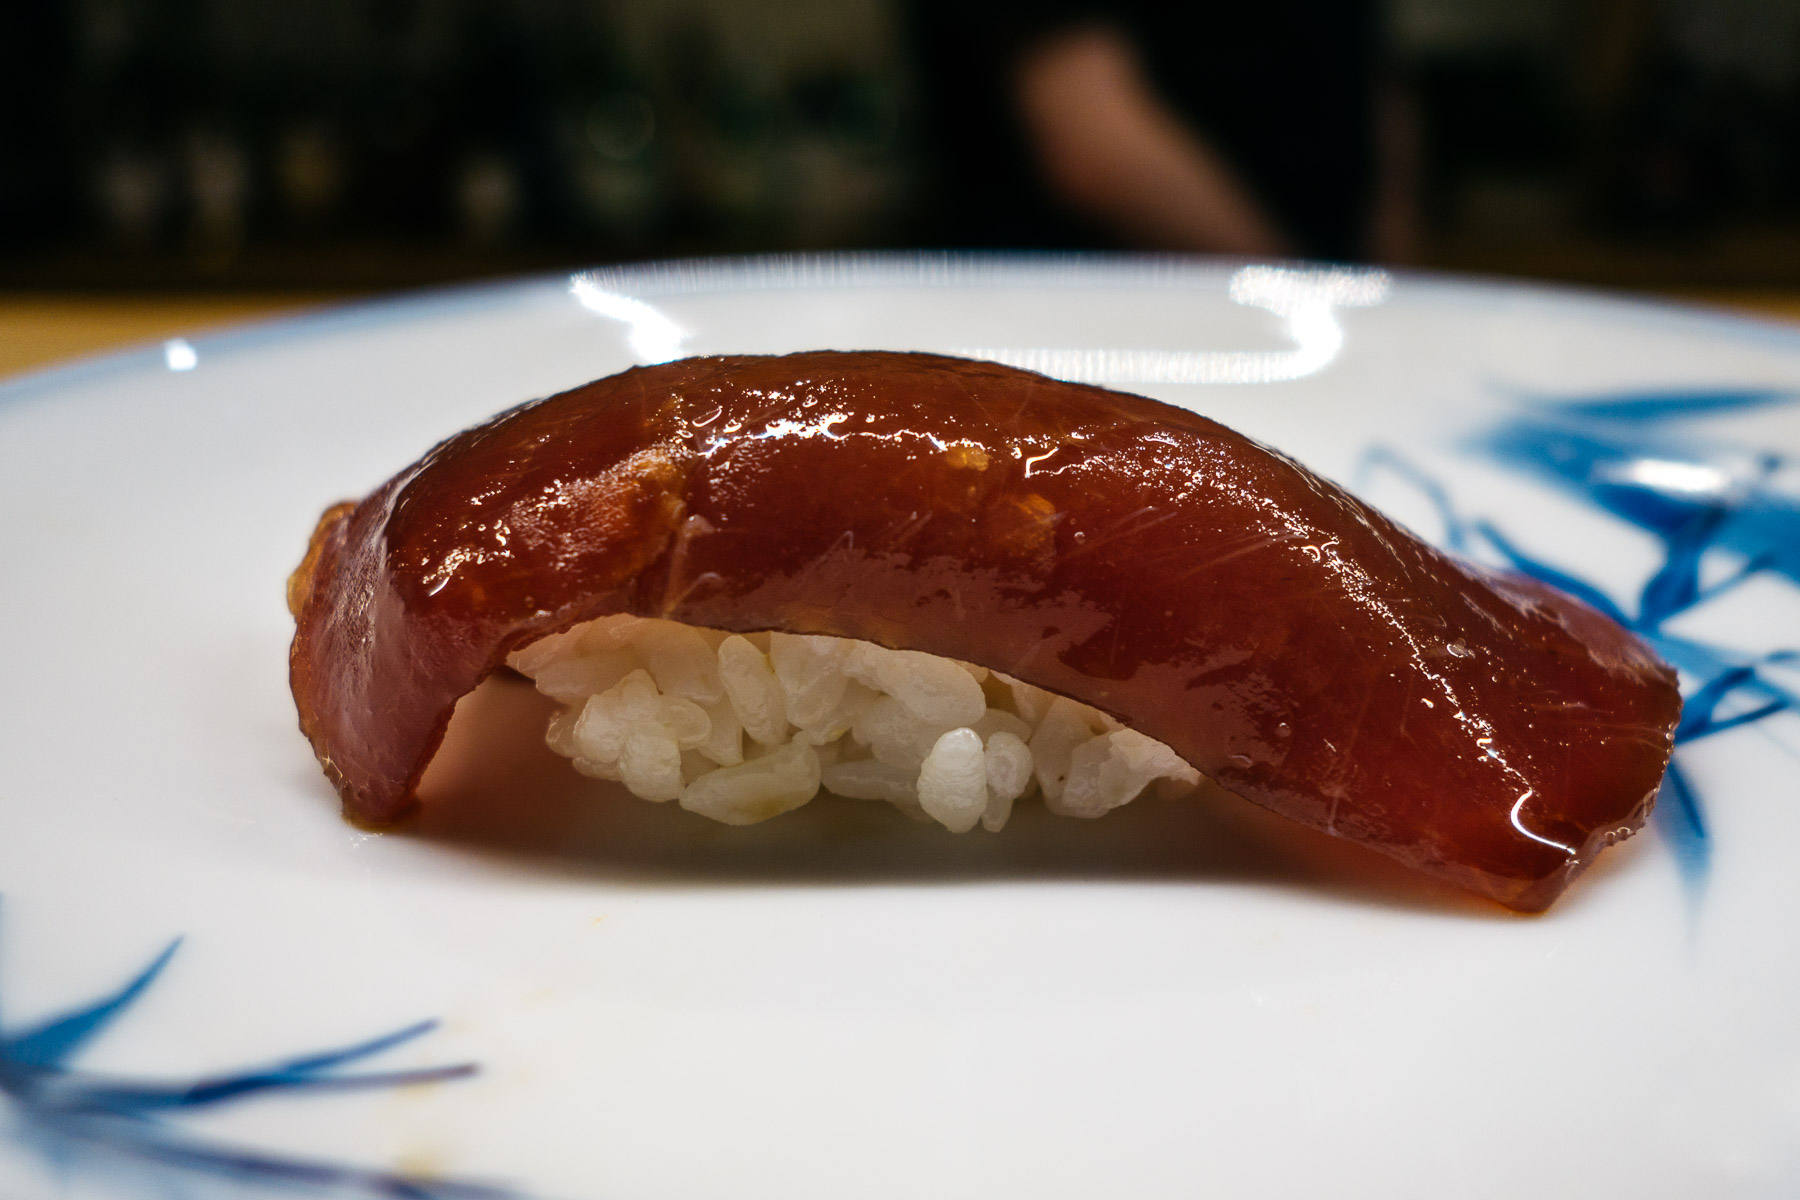 Akami zuke (marynowane chude mieso tuńczyka błękitnopłetwego)